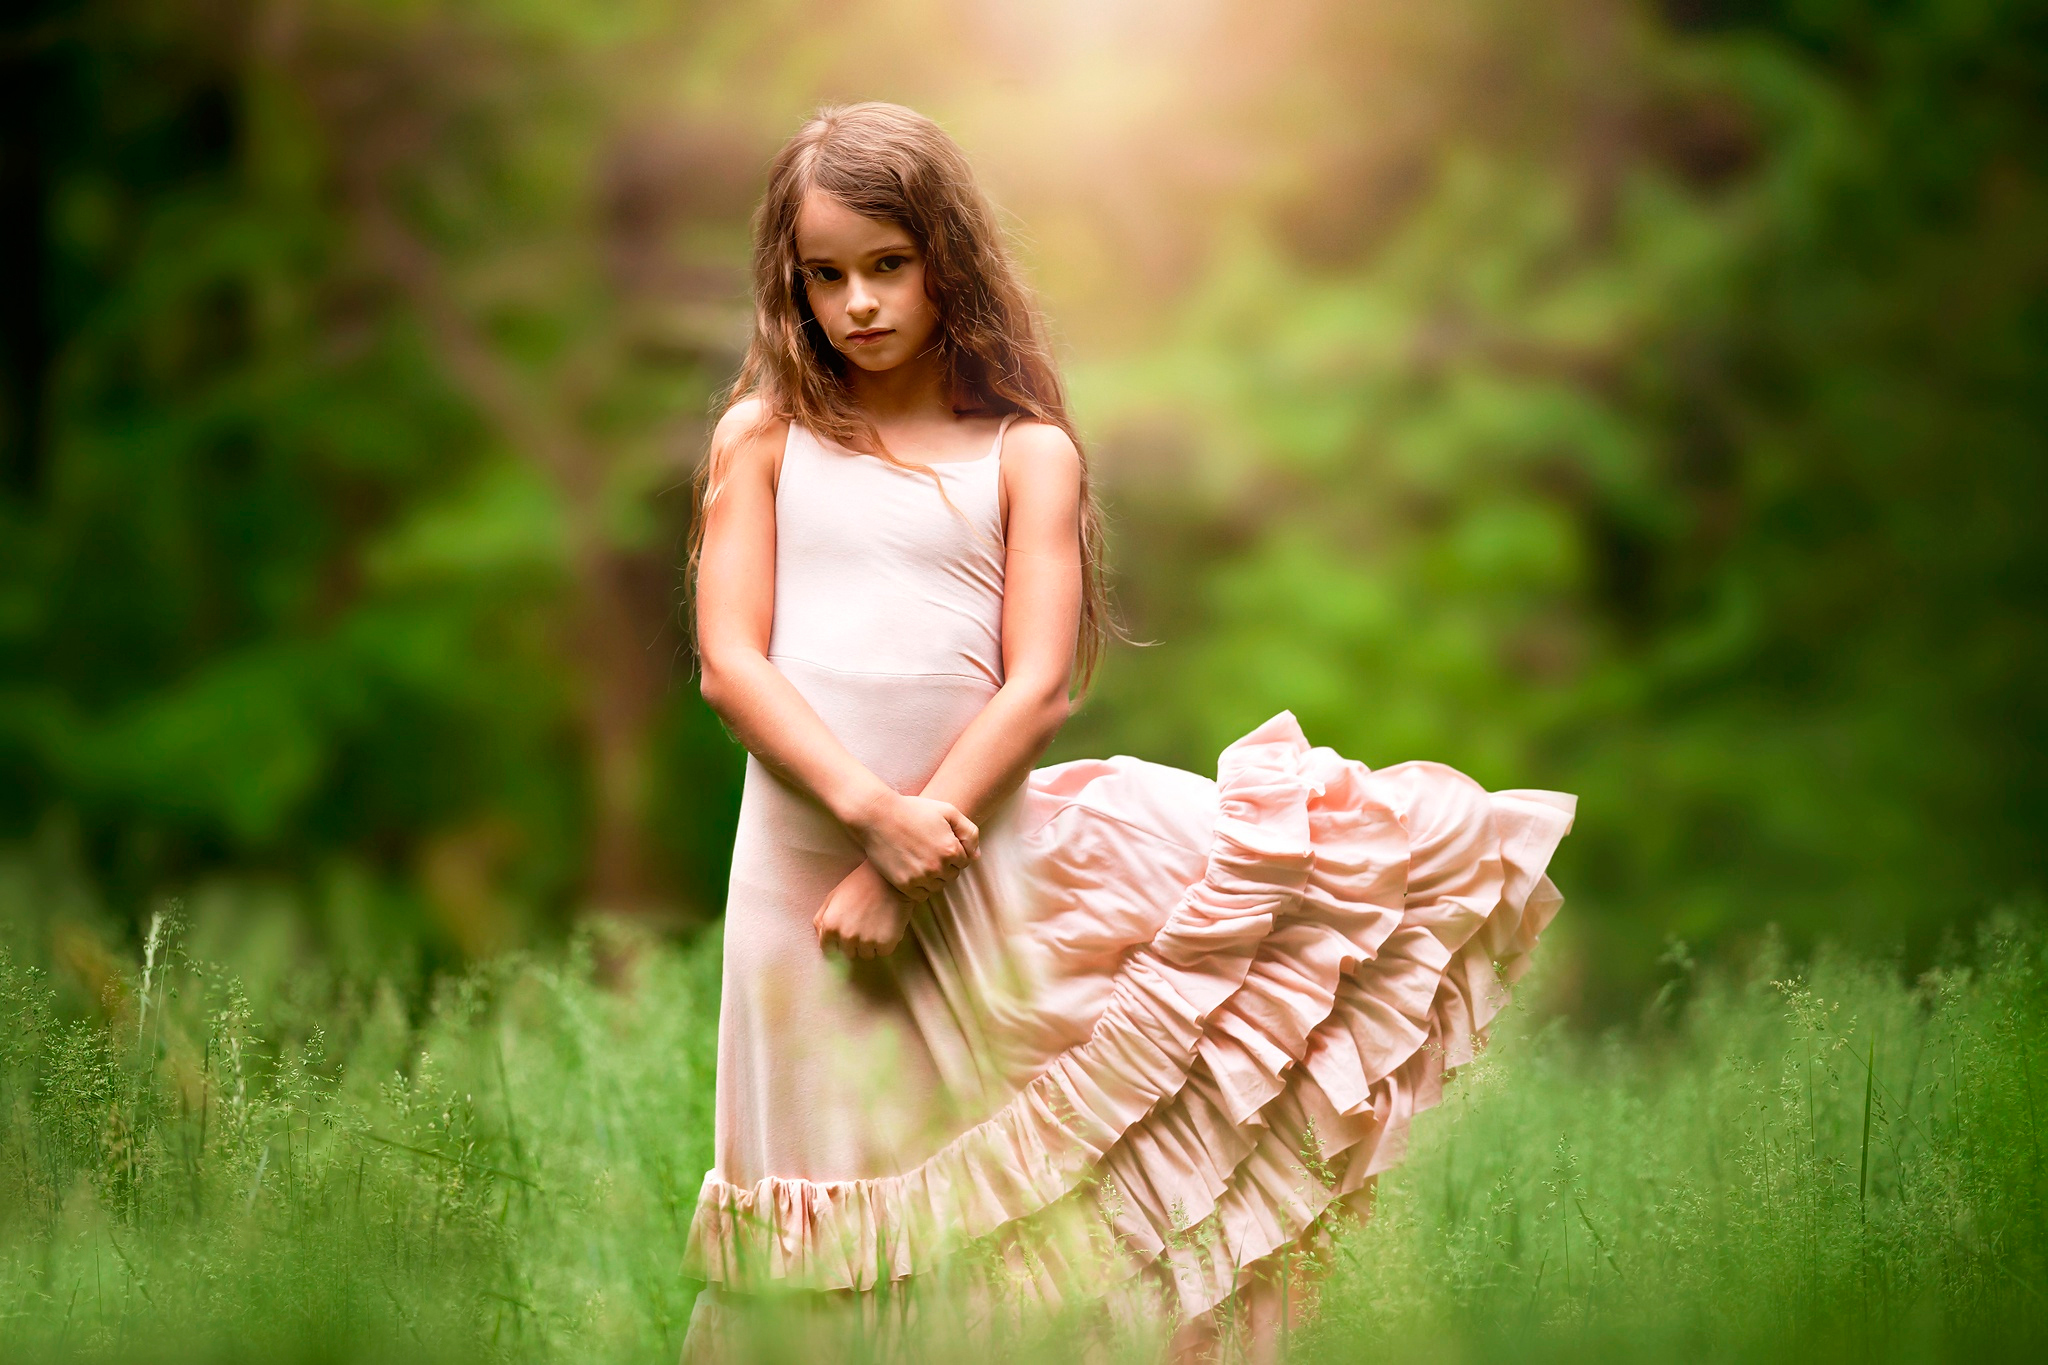 Little girls models tabu. Платье для девочки. Девочка. Девочка в платье на природе. Красивые платья для девочек.